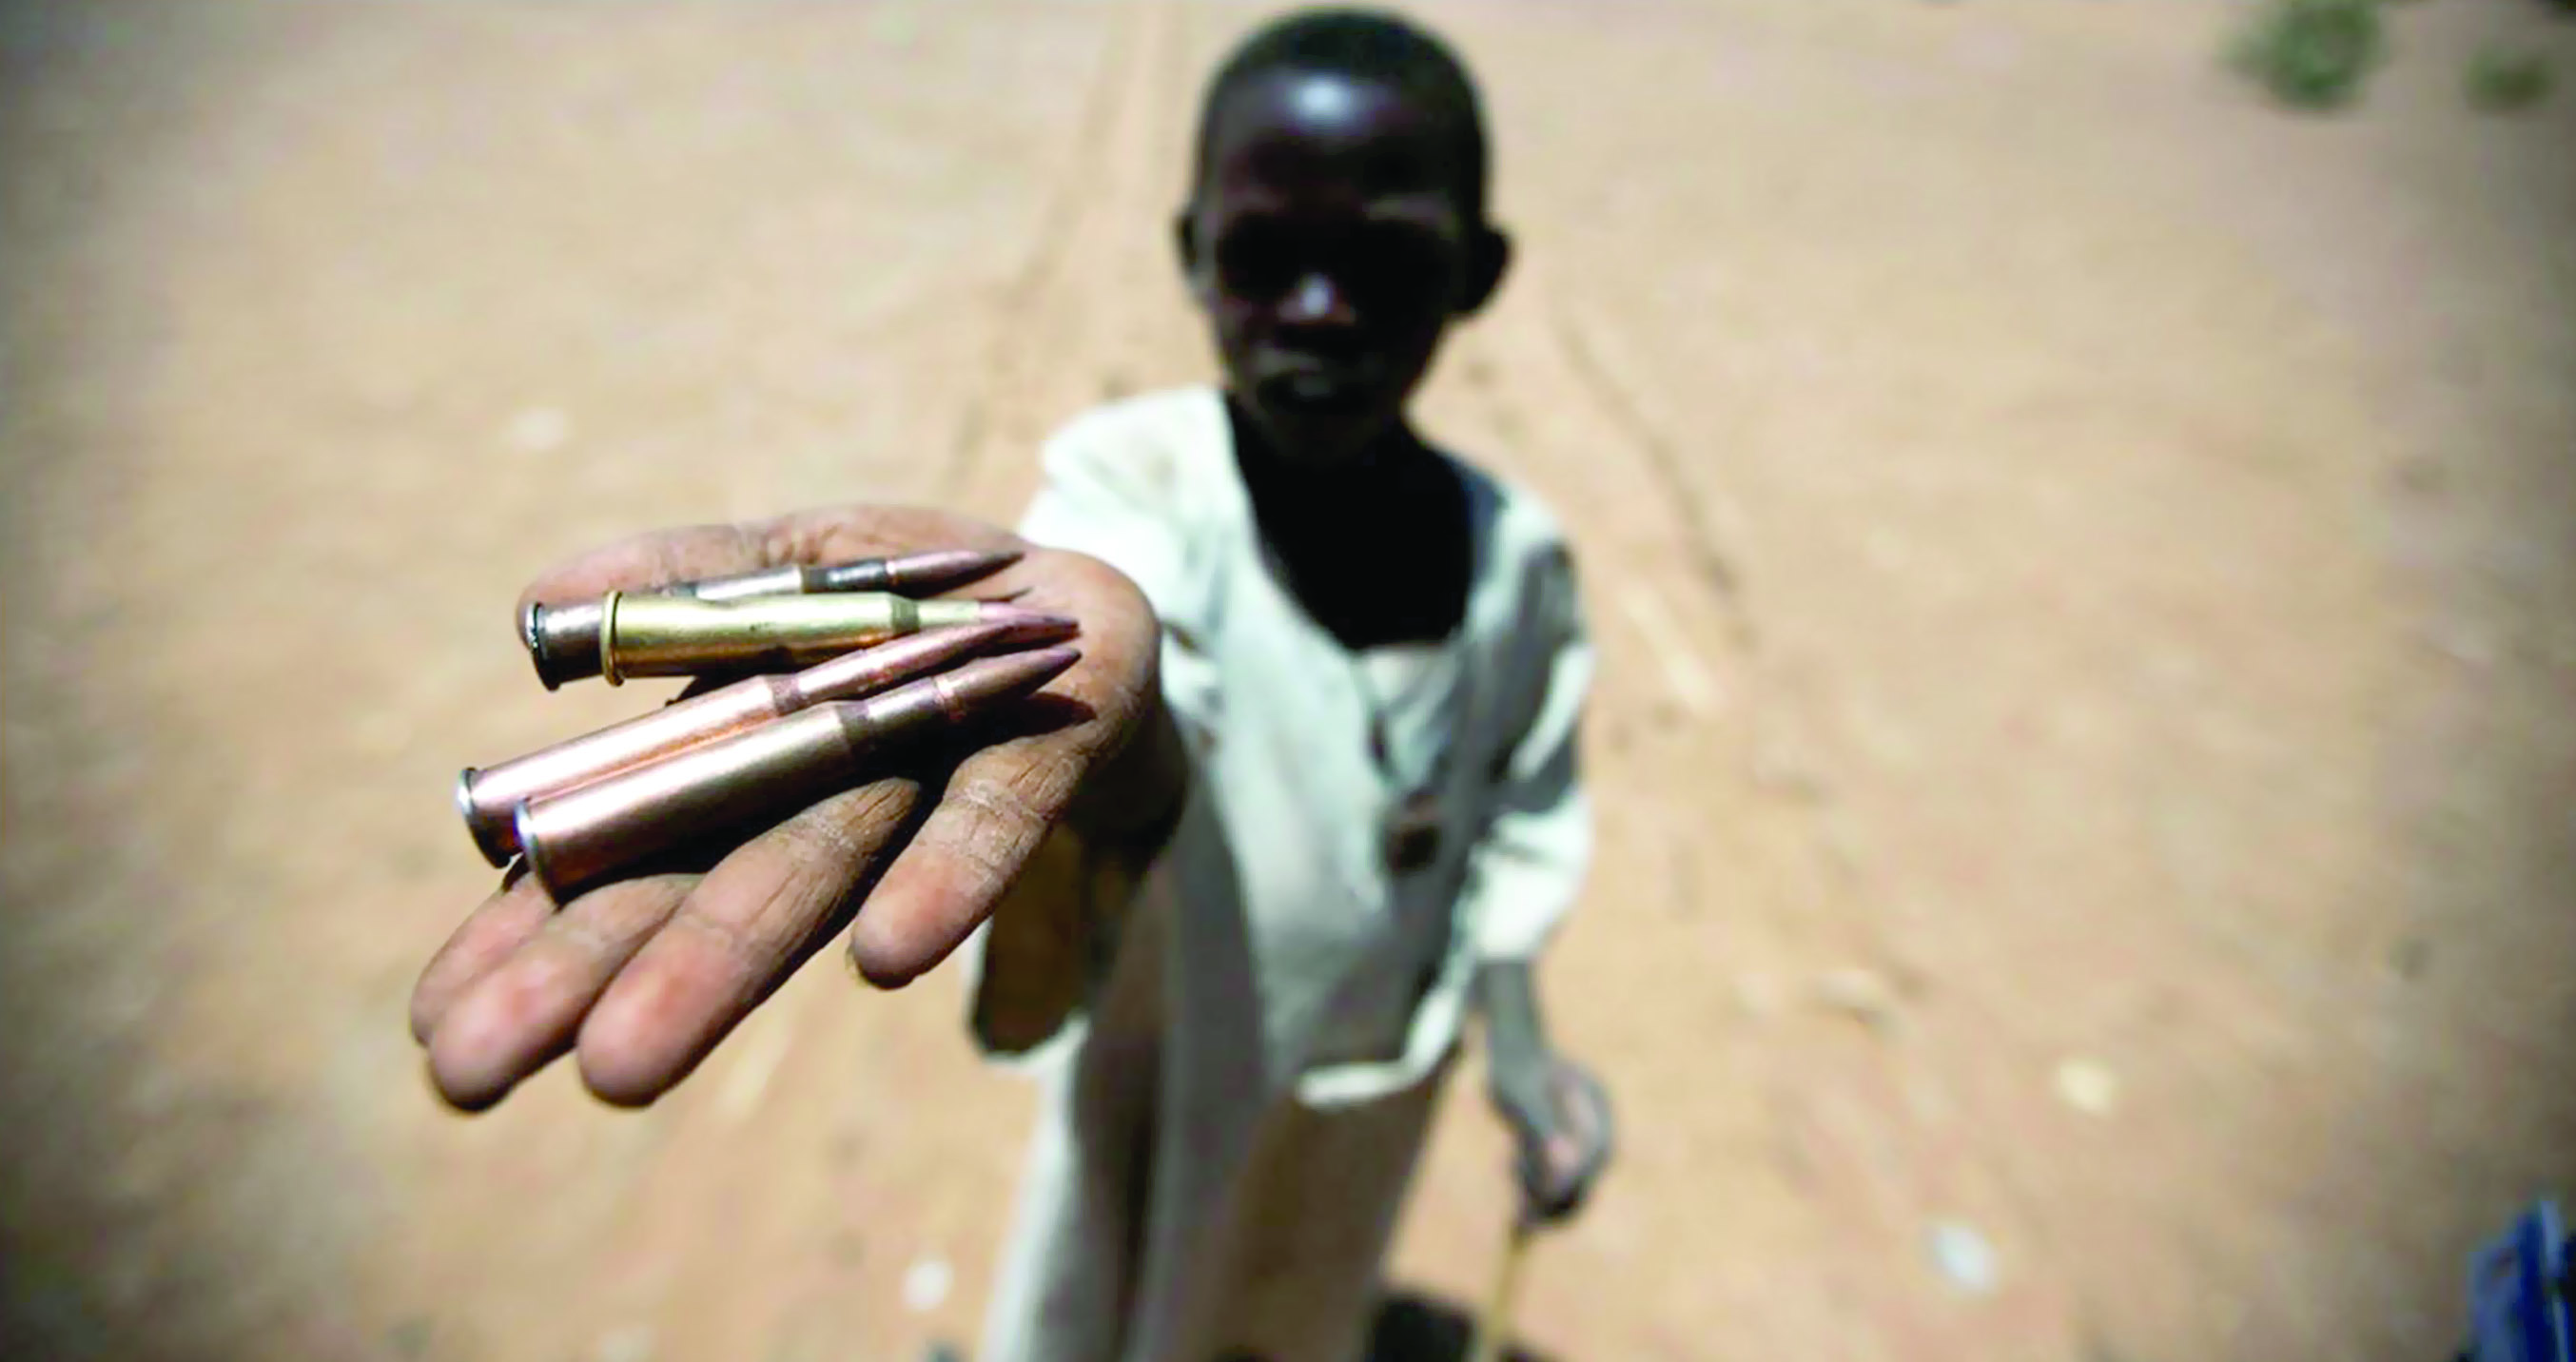 تقرير إخباري:
اليونسيف تشير إلى أن نصف الأطفال في شمال دارفور خارج التعليم بسبب النزاع